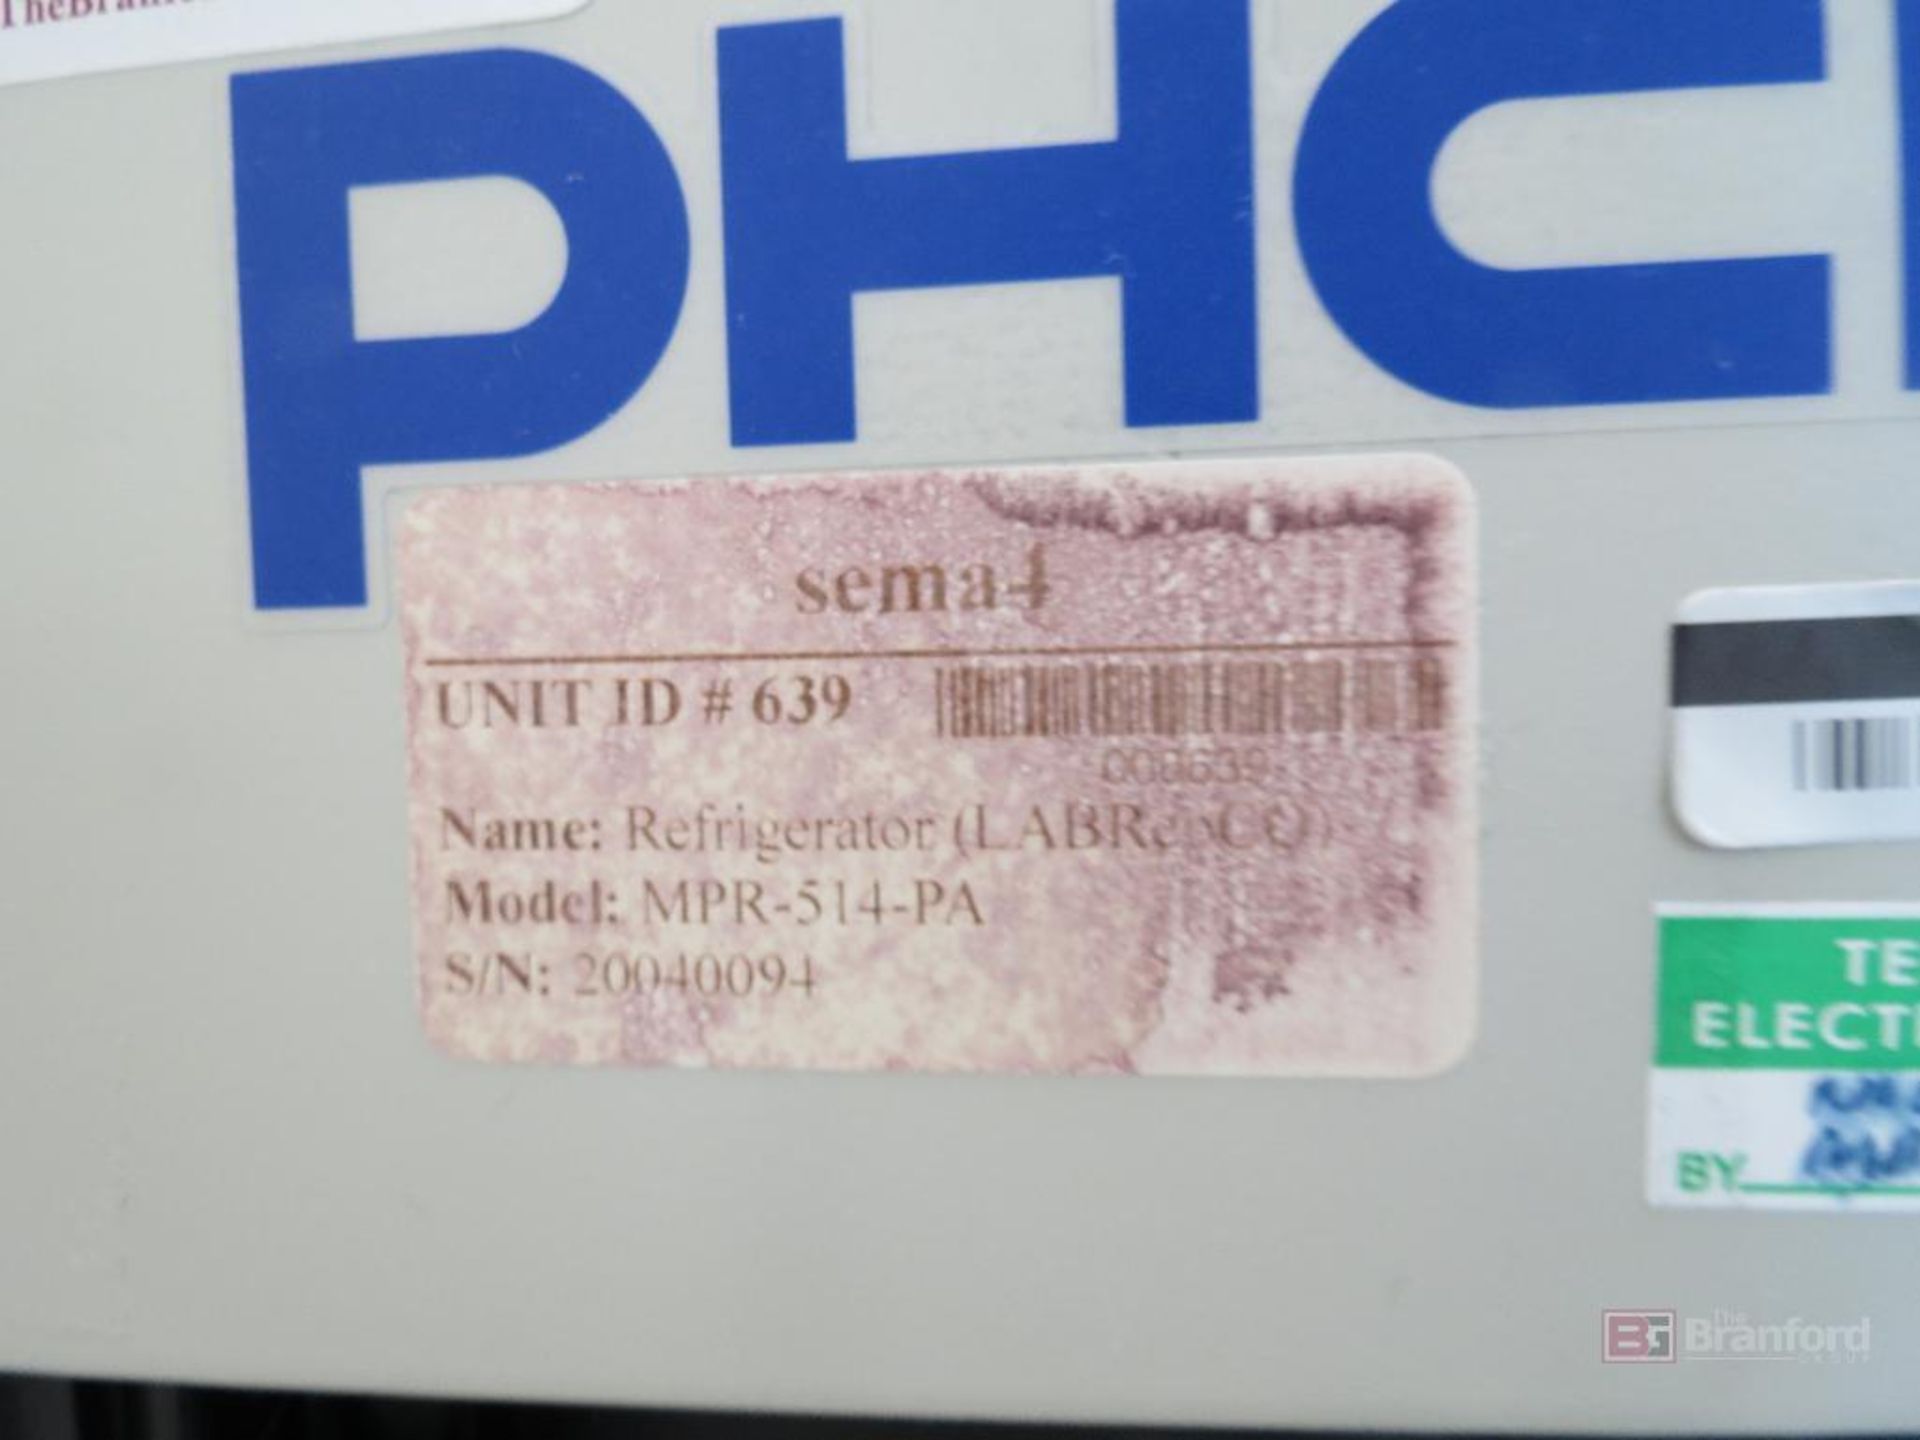 PHCbi MPR-514-PA Sliding Glass Door Pharmaceutical Refrigerator - Image 2 of 4